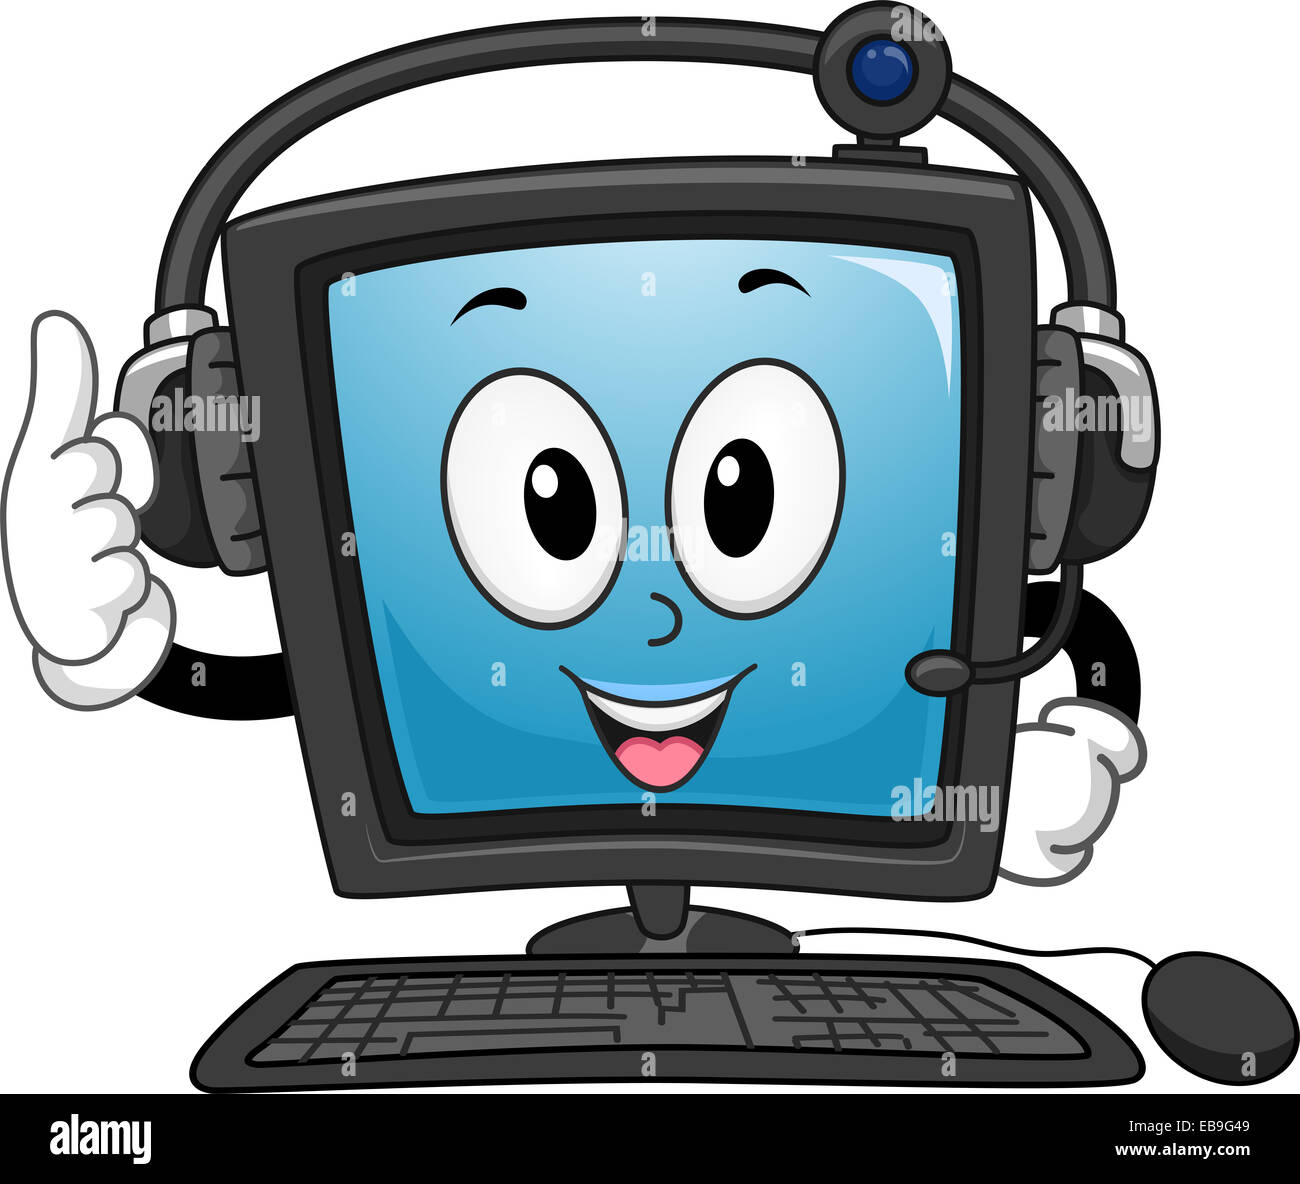 Mascota Ilustración de un monitor de ordenador usando un auricular Foto de stock